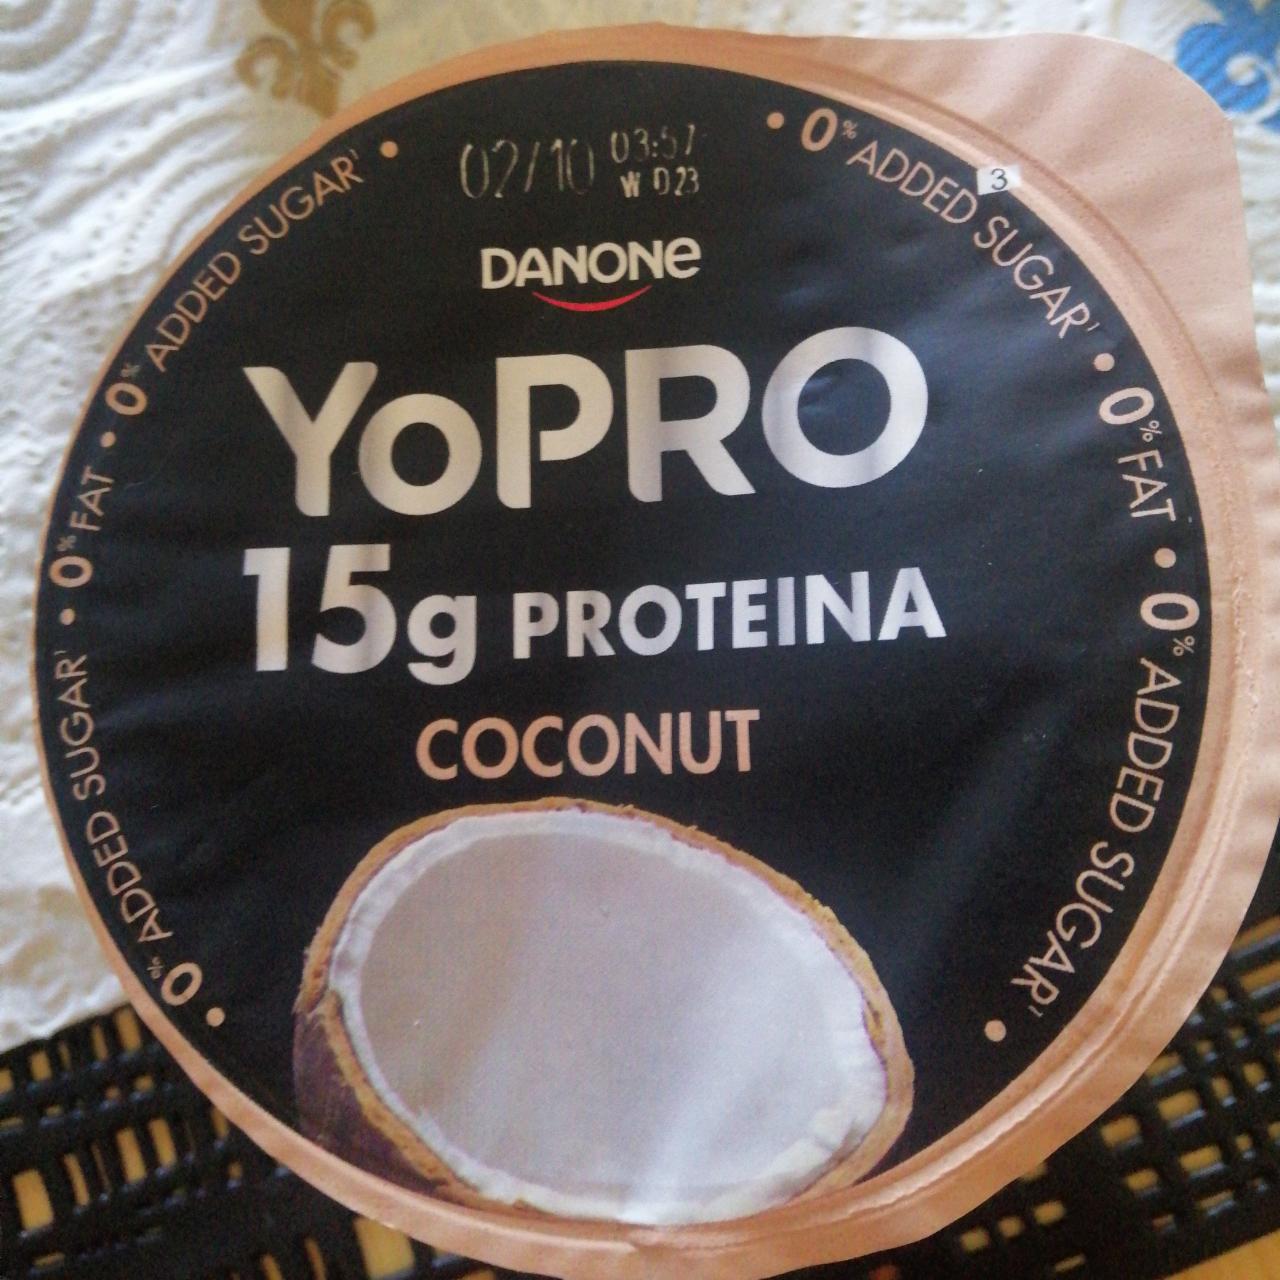 Фото - Йогурт протеиновый со вкусом кокоса Protein Coconut YoPro Danone